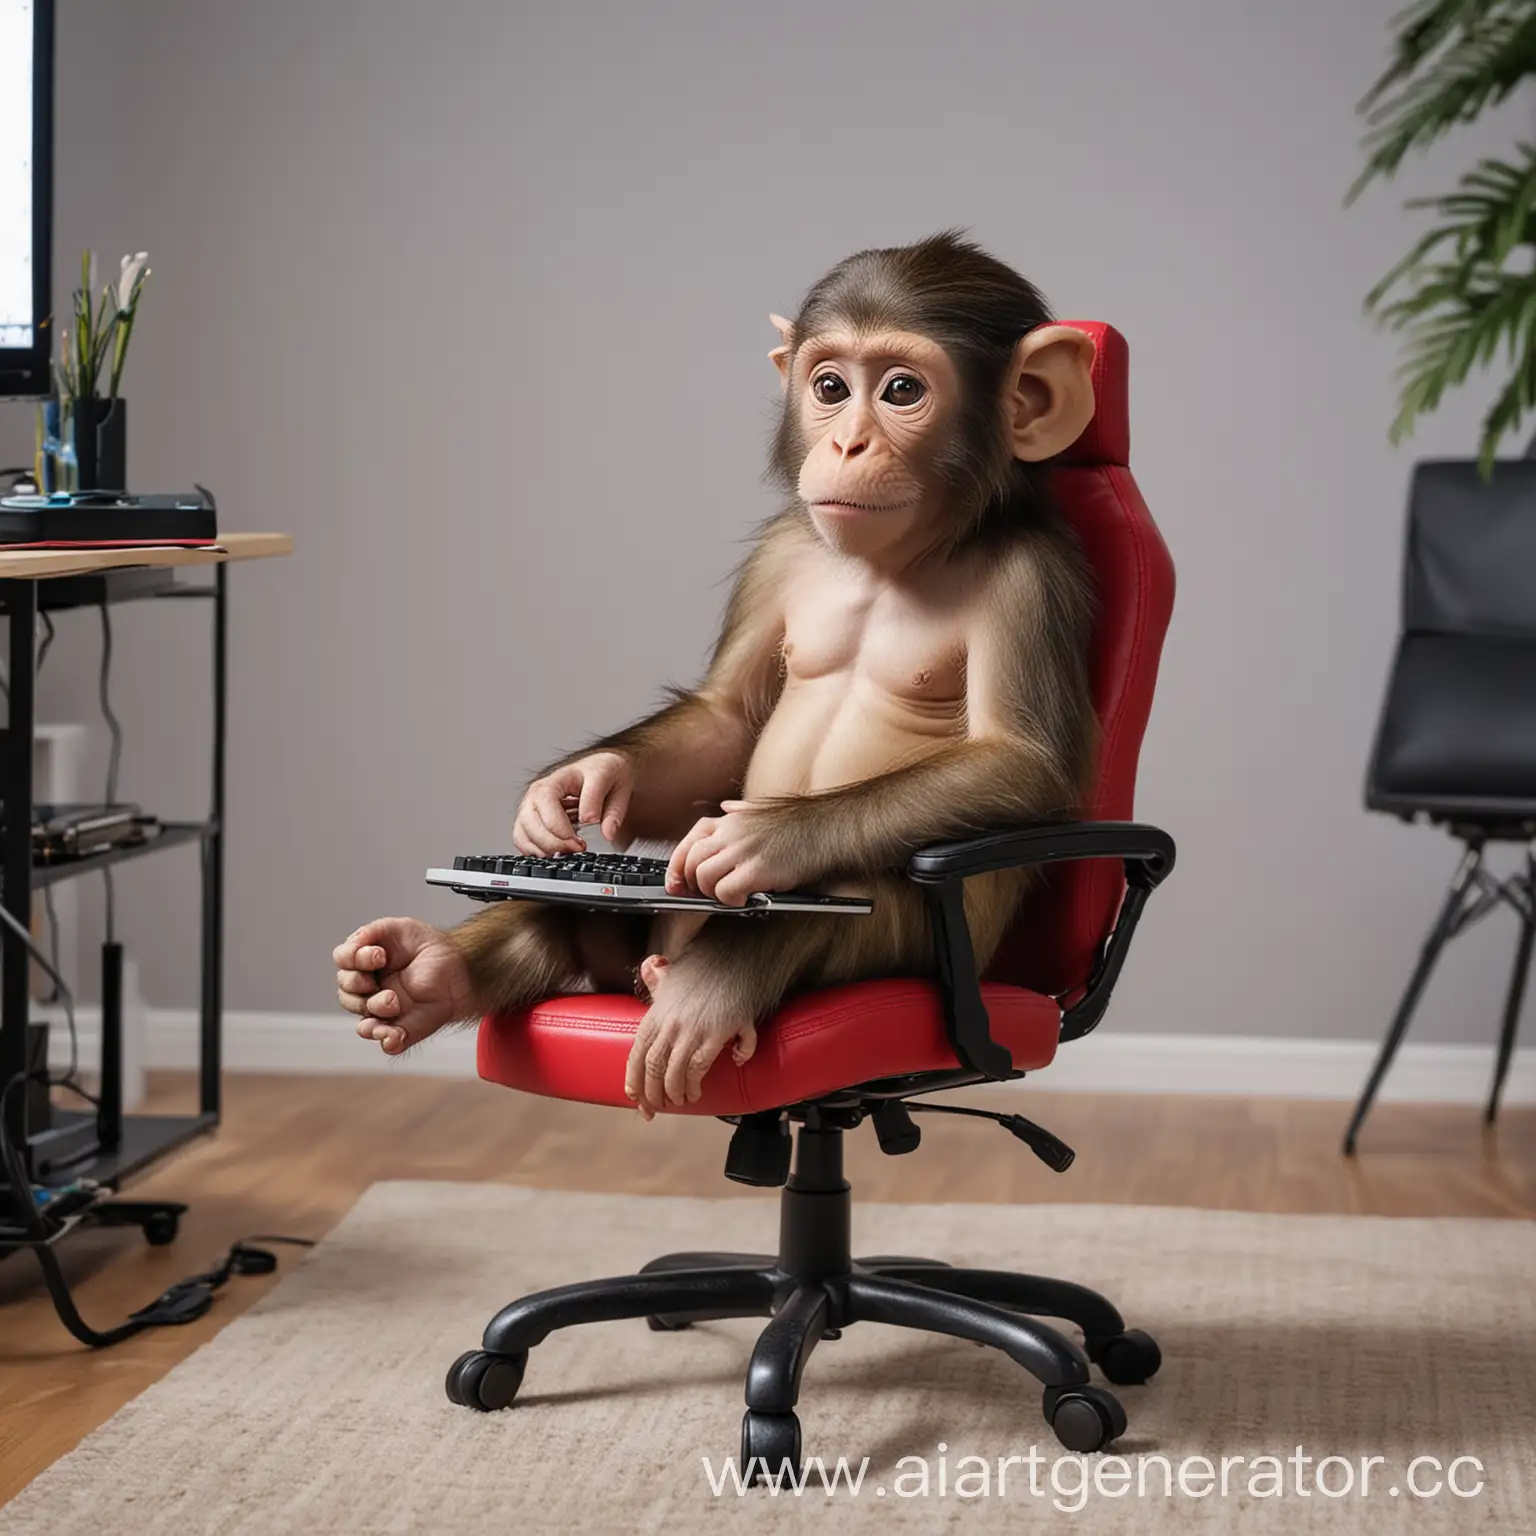 маленькая обезьянка в комнате сидит на игровом кресле за своим нотубуком и играет на нем в игры